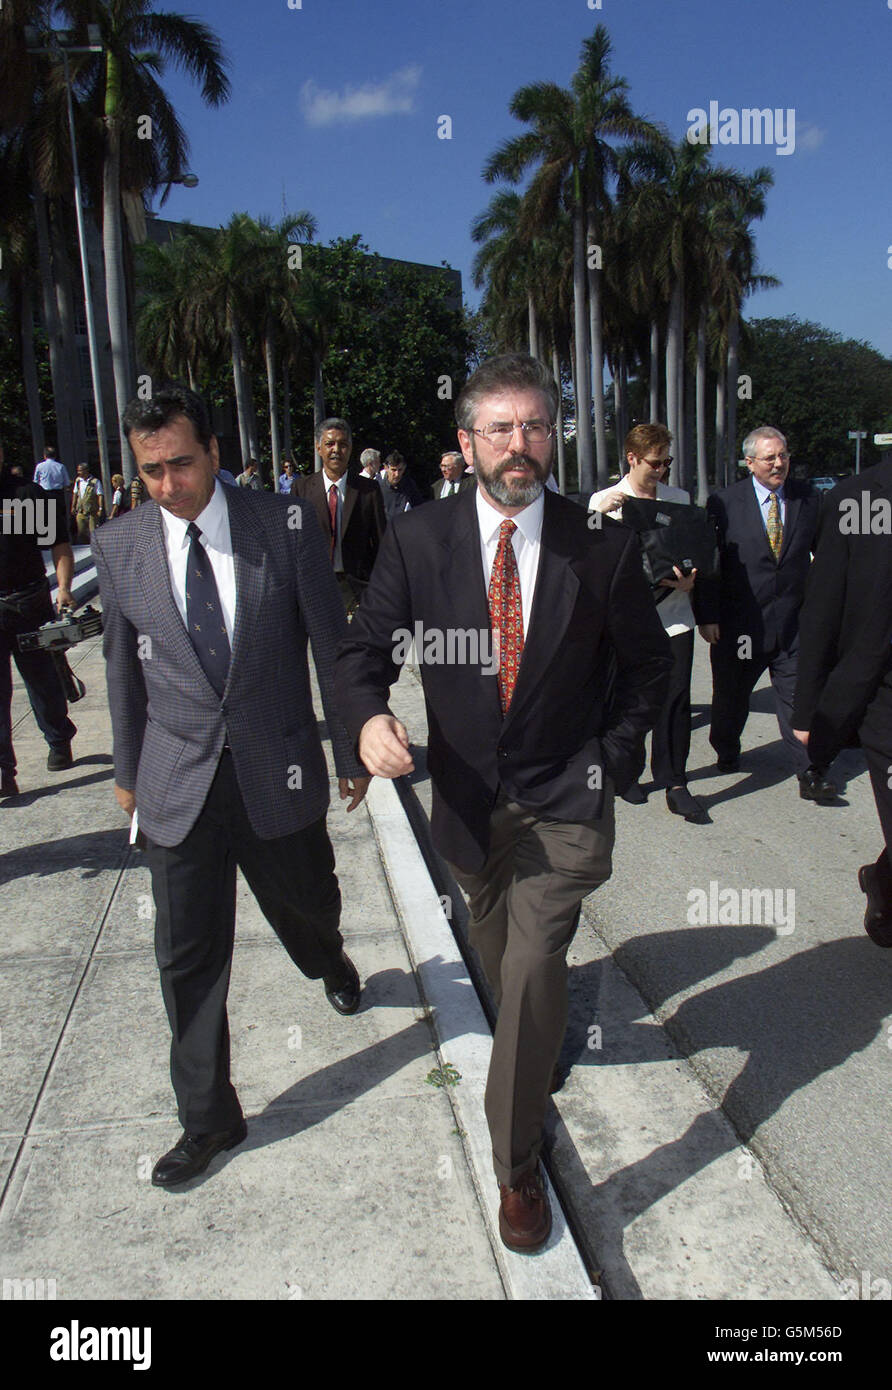 Il presidente del Sinn Fein Gerry Adams arriva per un incontro a l'Avana, Cuba. Adams ha chiesto il rilascio di tre Irishmen incarcerati dalle autorità colombiane dopo un incontro con alti funzionari del governo cubano. Foto Stock